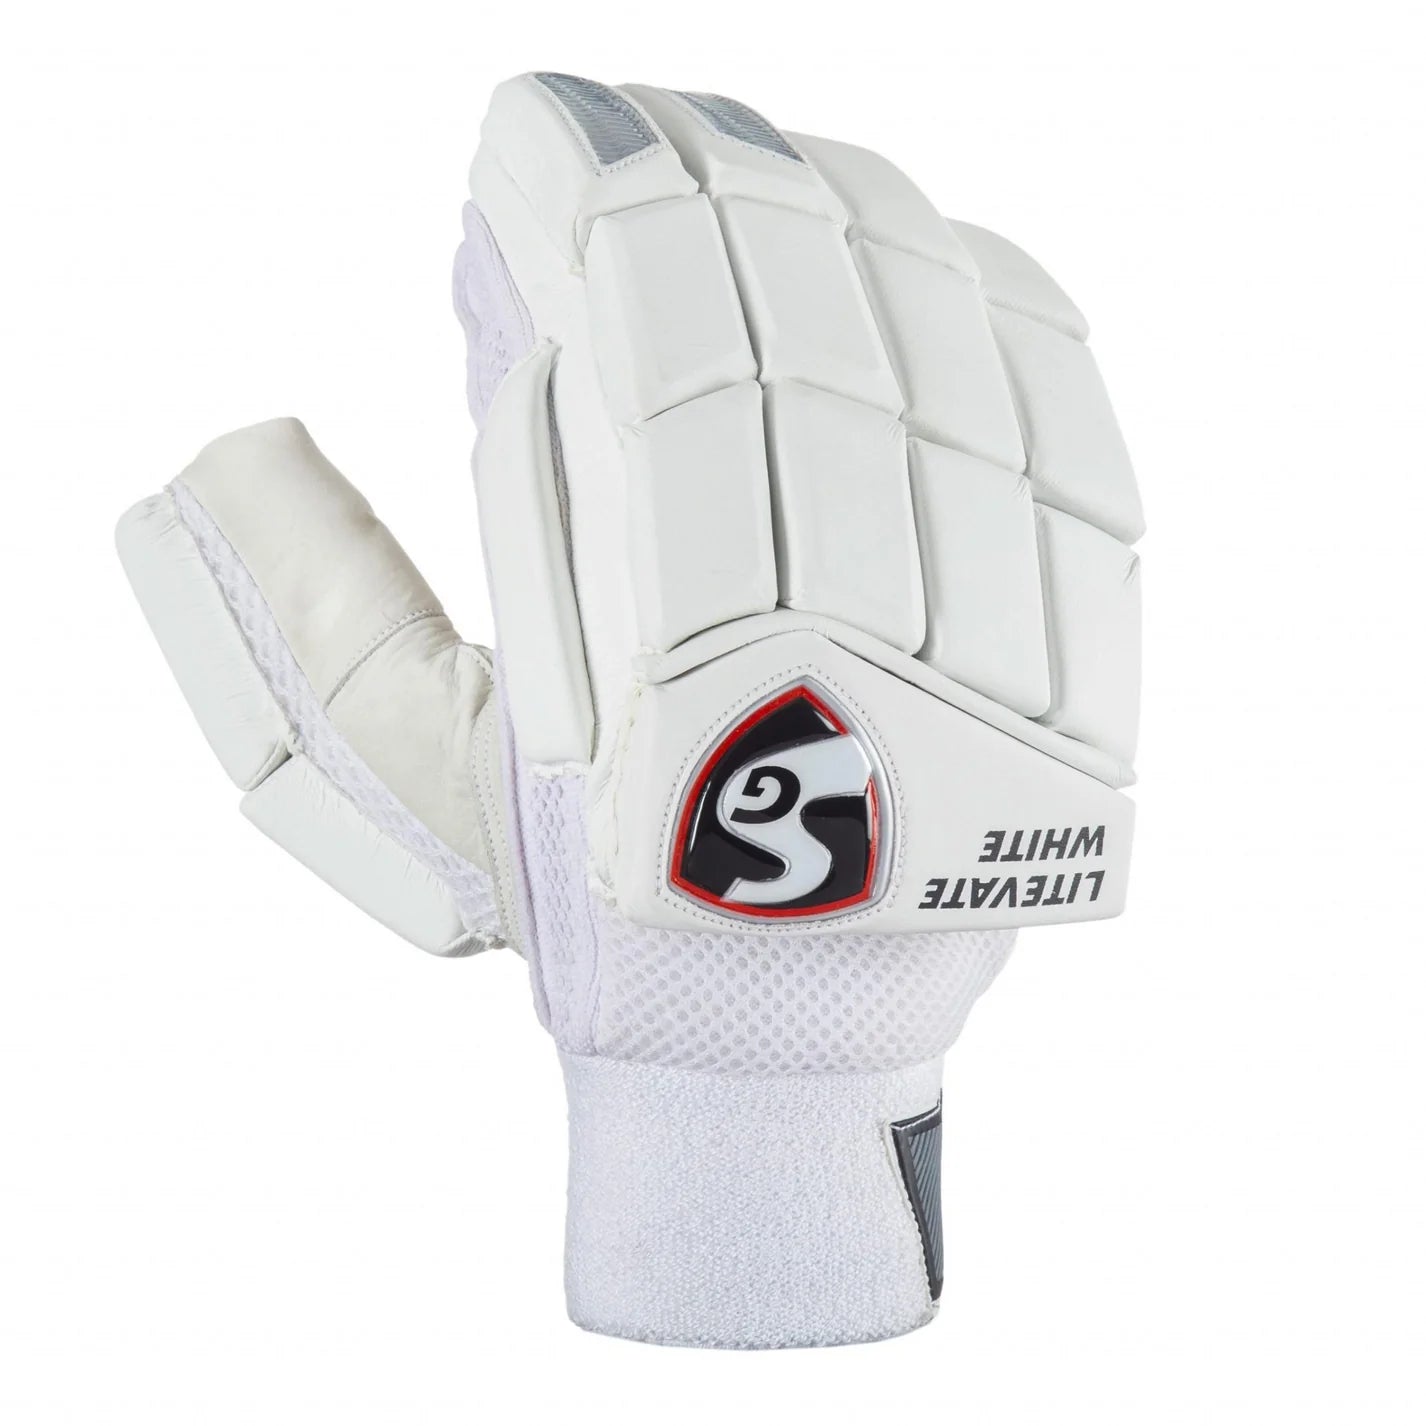 SG Litevate White LH Batting Gloves